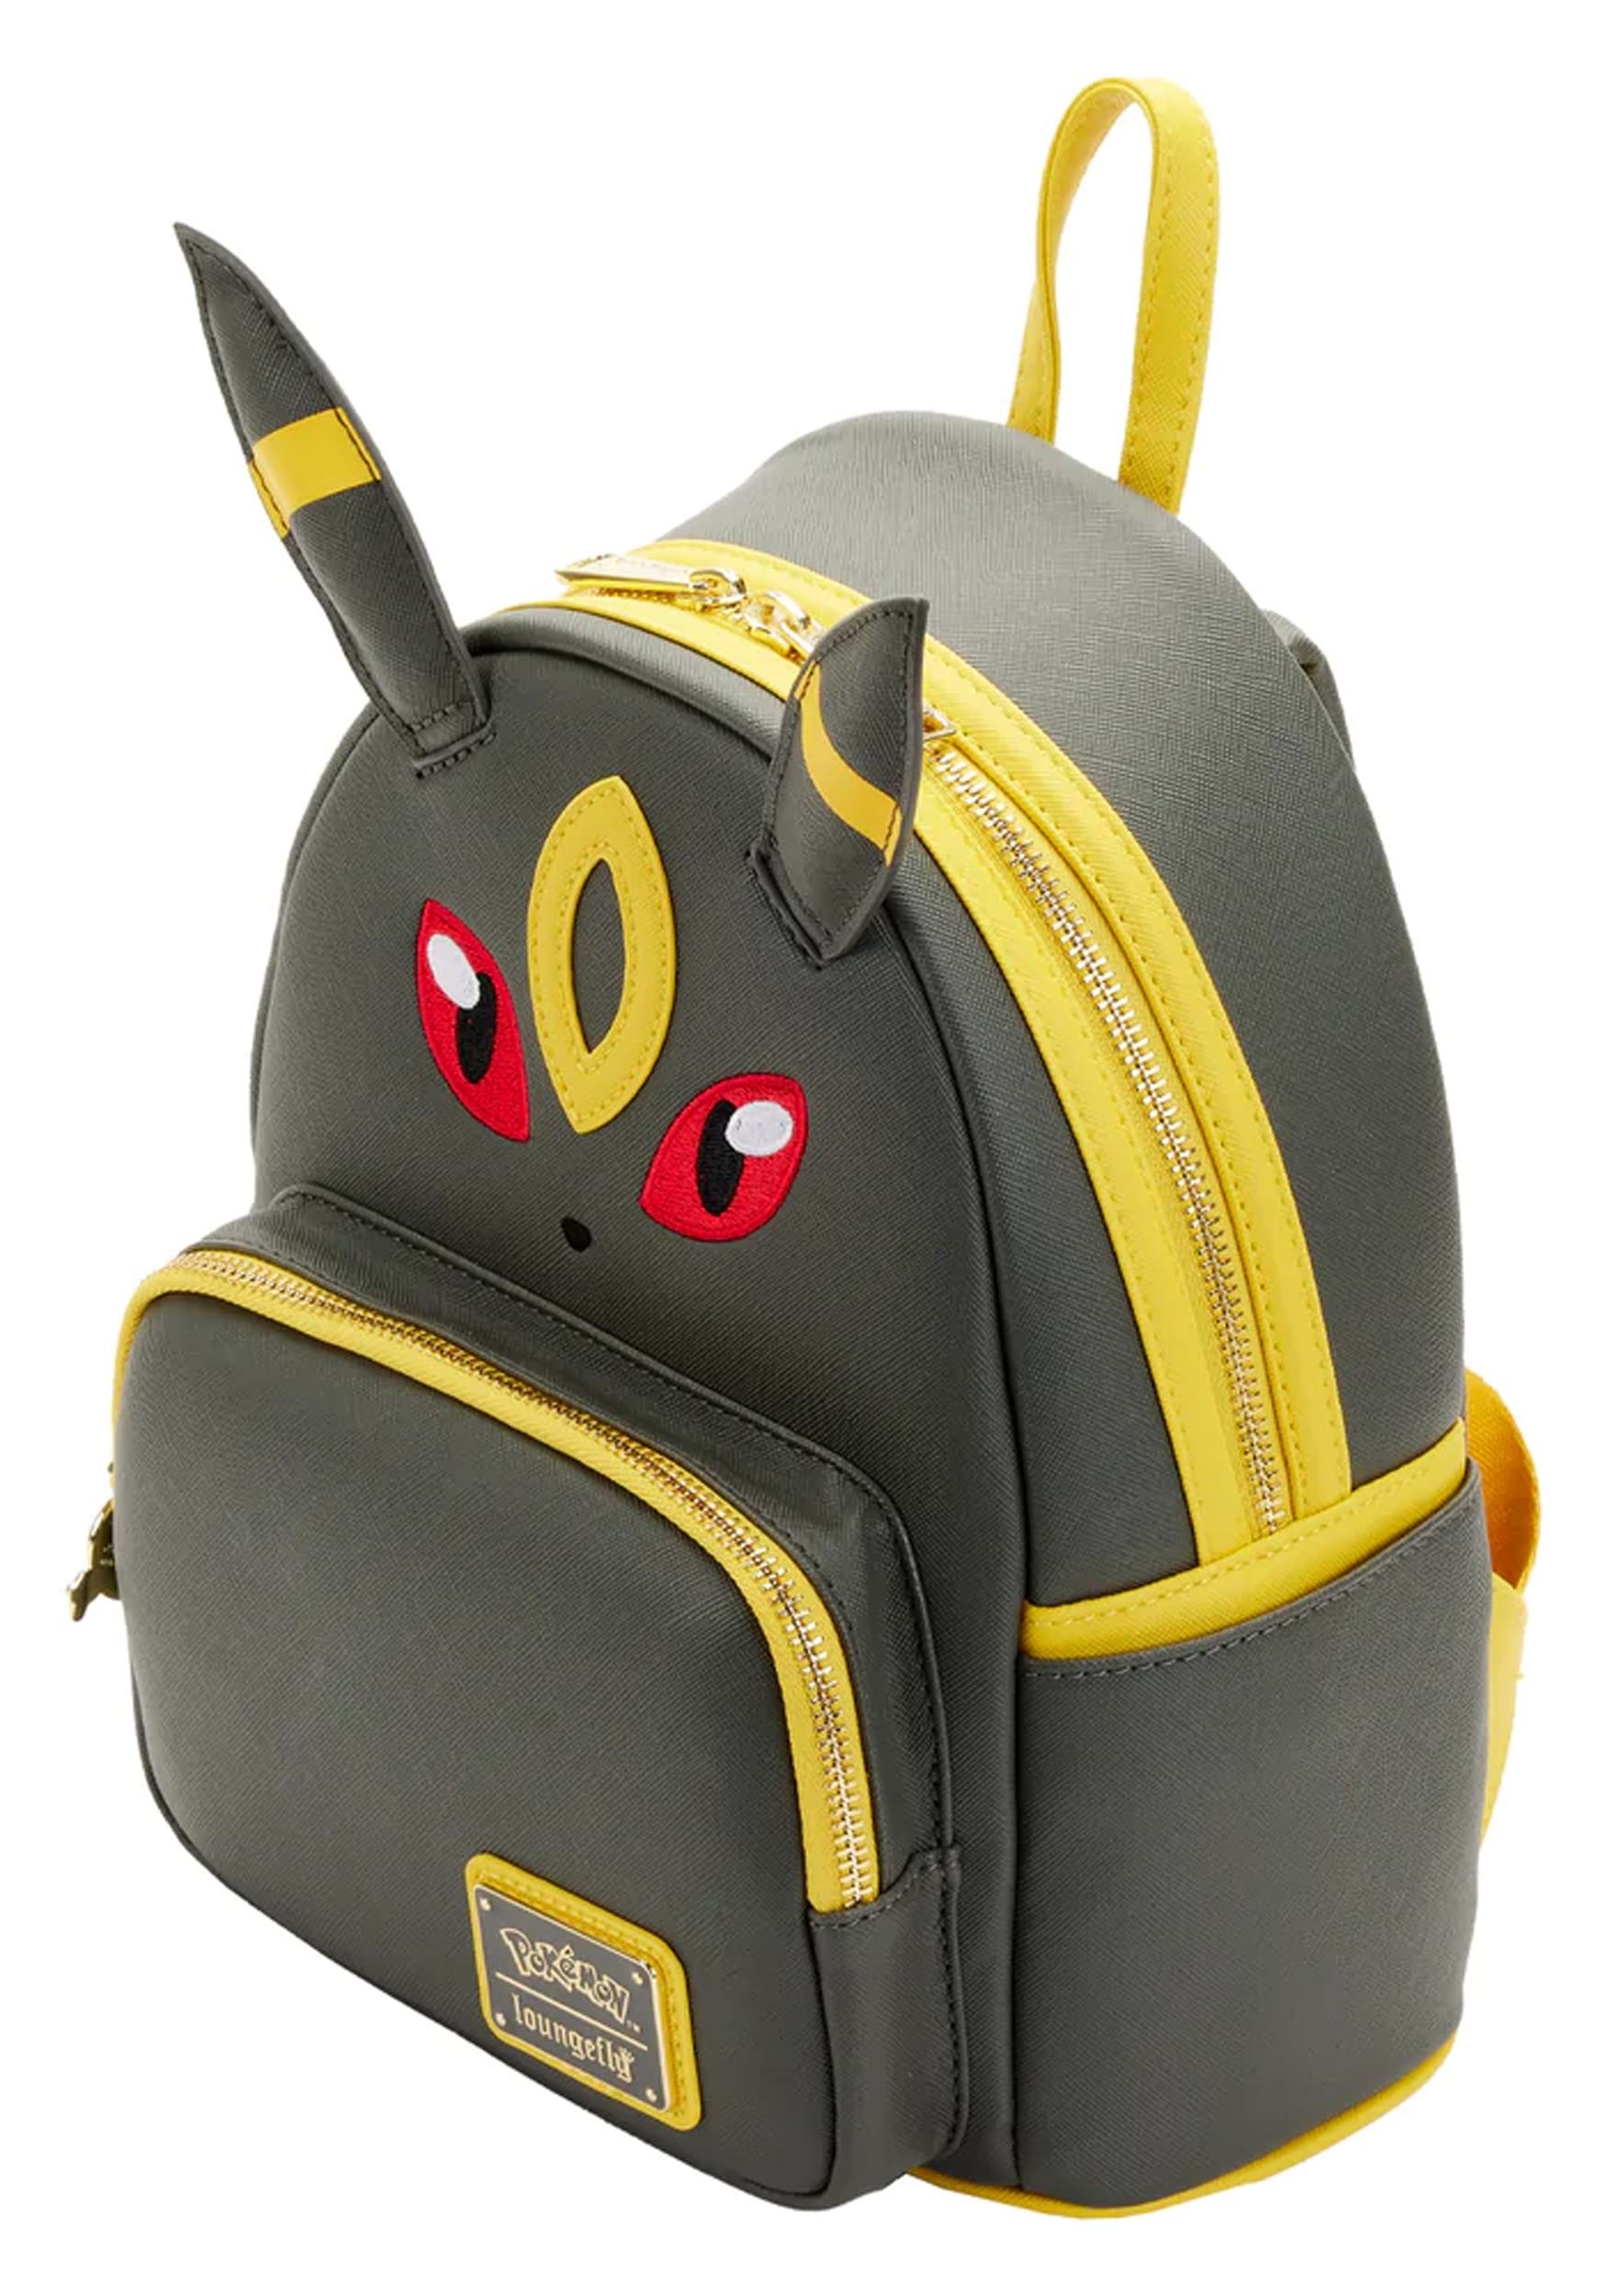 Sleeping Pikachu and Friends Mini Backpack